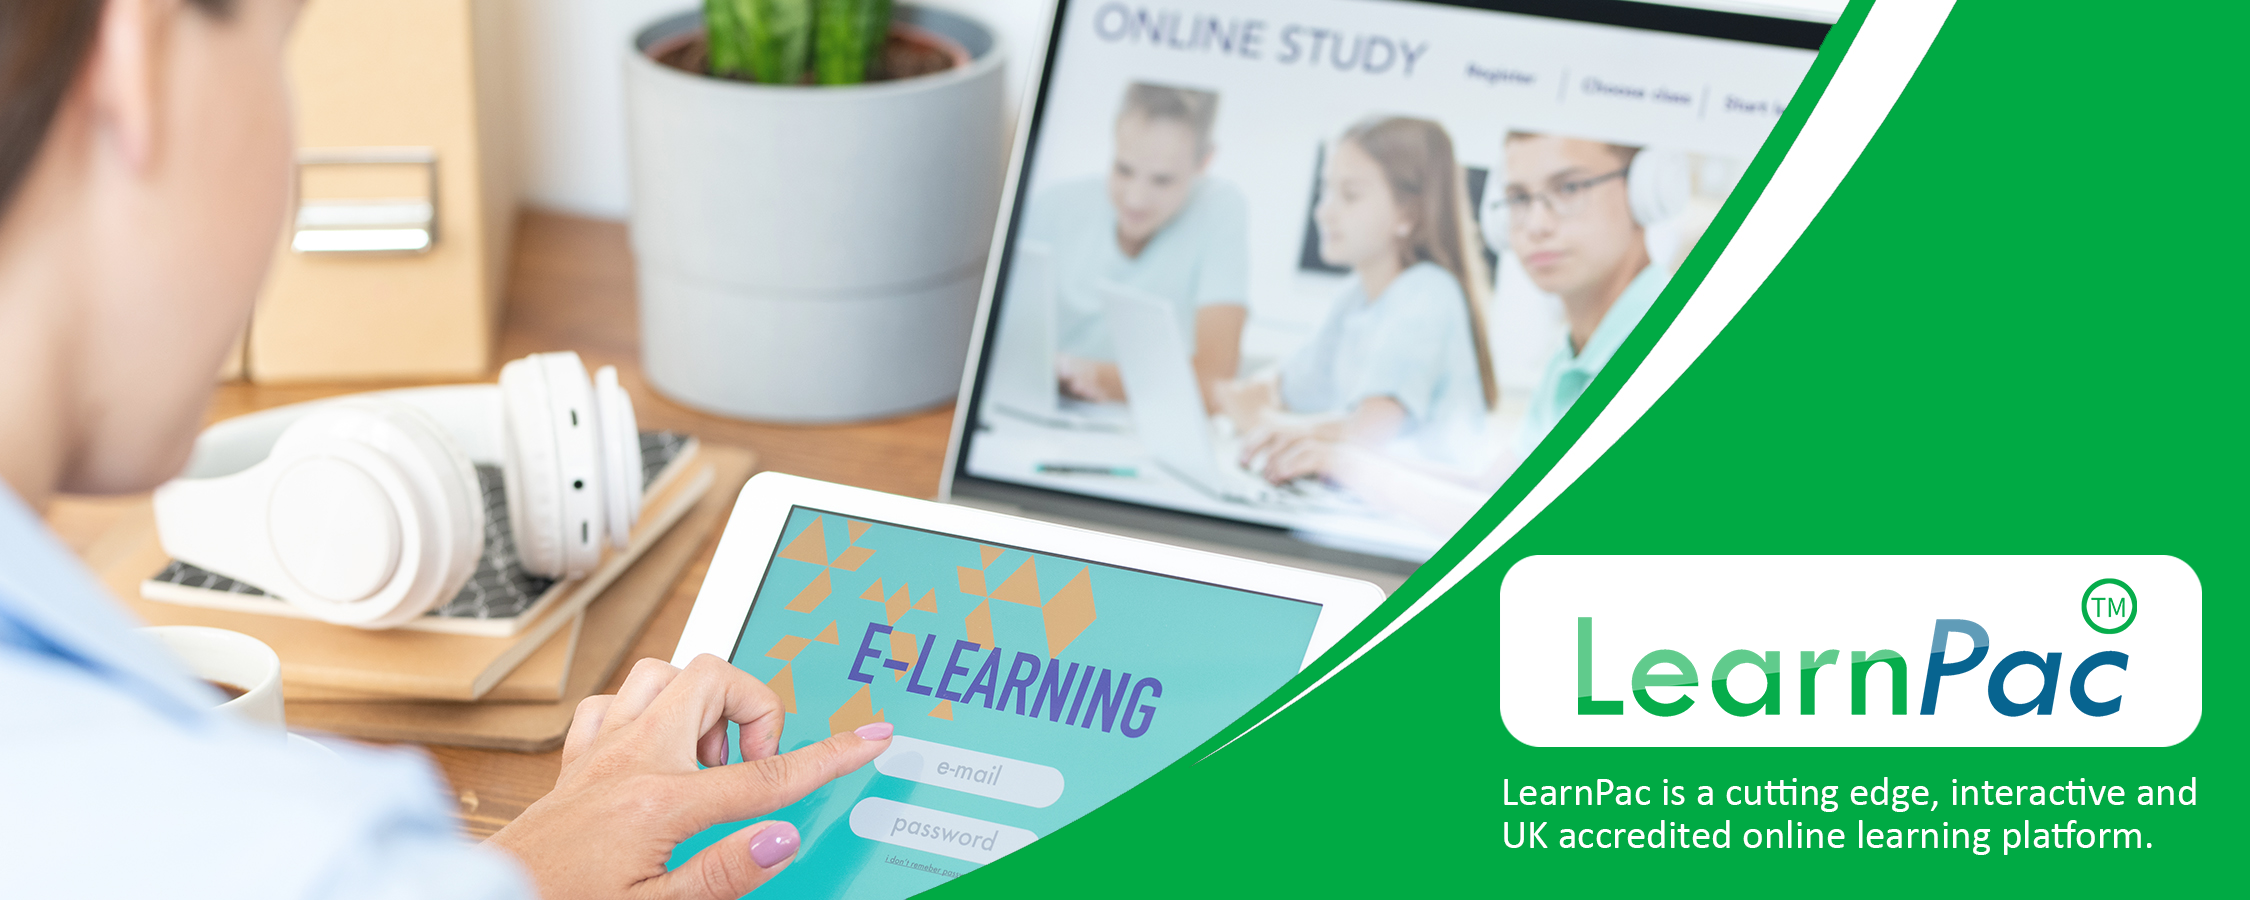 Servant Leadership Training - Online Learning Courses - E-Learning Courses - LearnPac Systems UK -